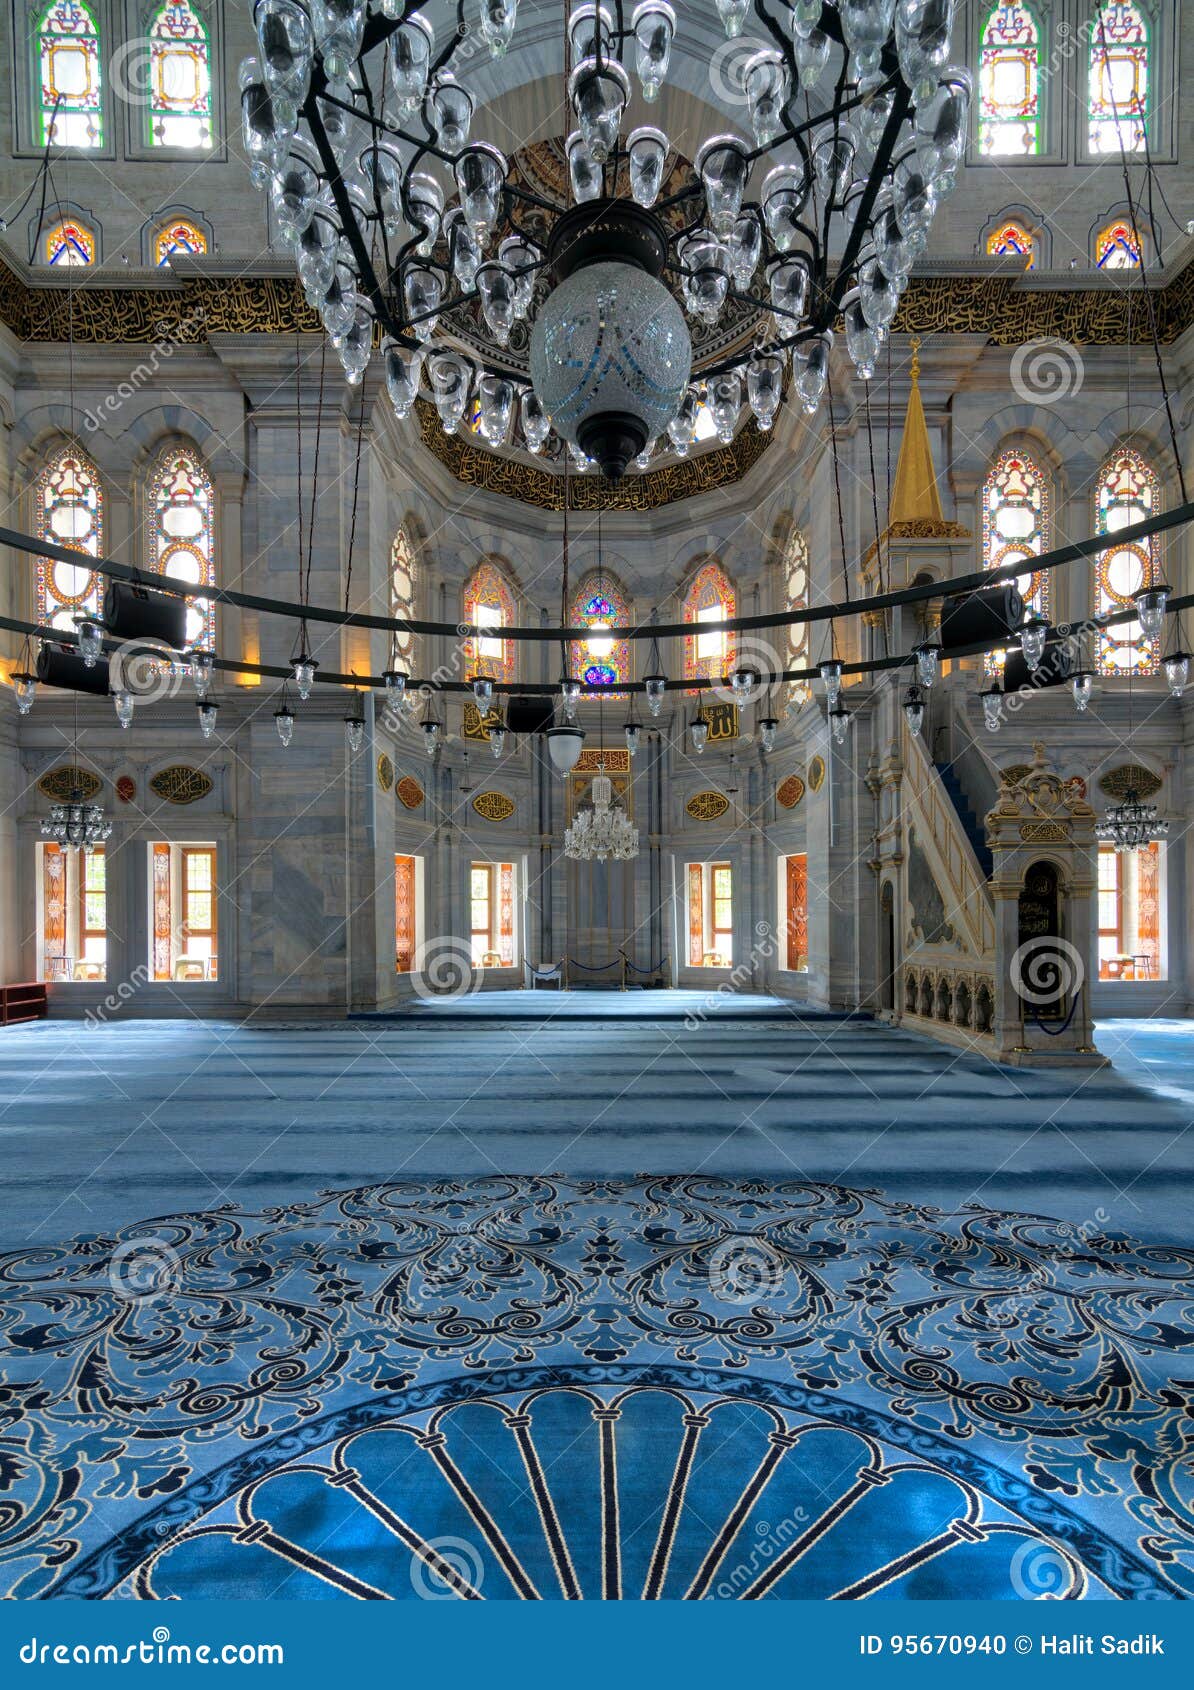 interior shot of nuruosmaniye mosque overlooking niche mihrab and marble minbar platform facade, istanbul, turkey